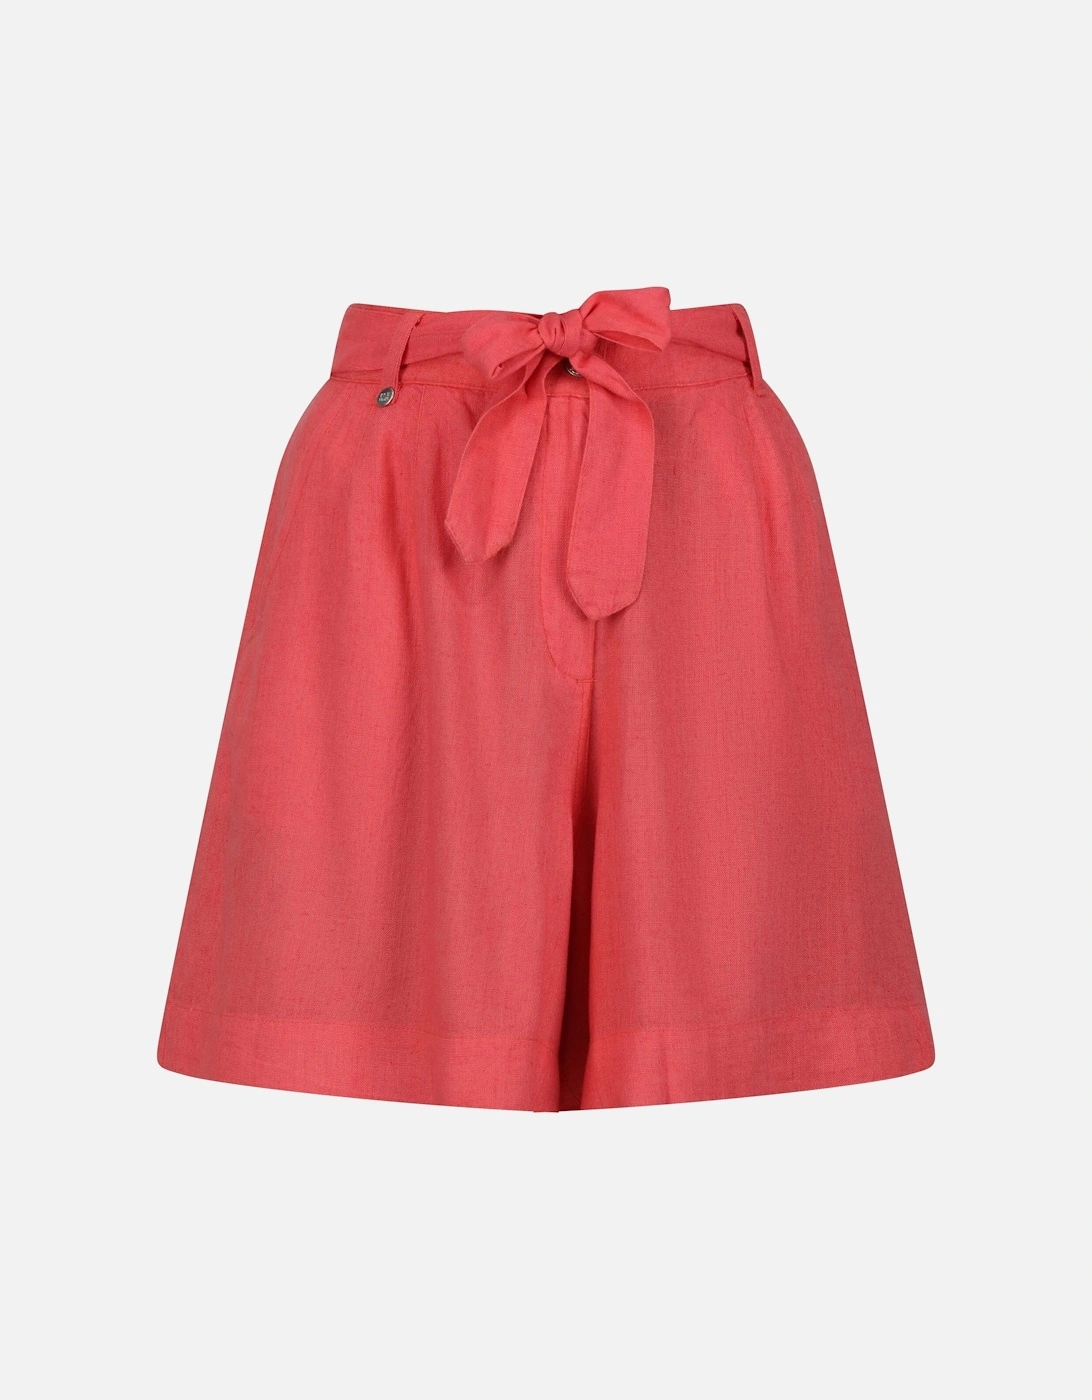 Womens/Ladies Sabela Paper Bag Shorts, 6 of 5